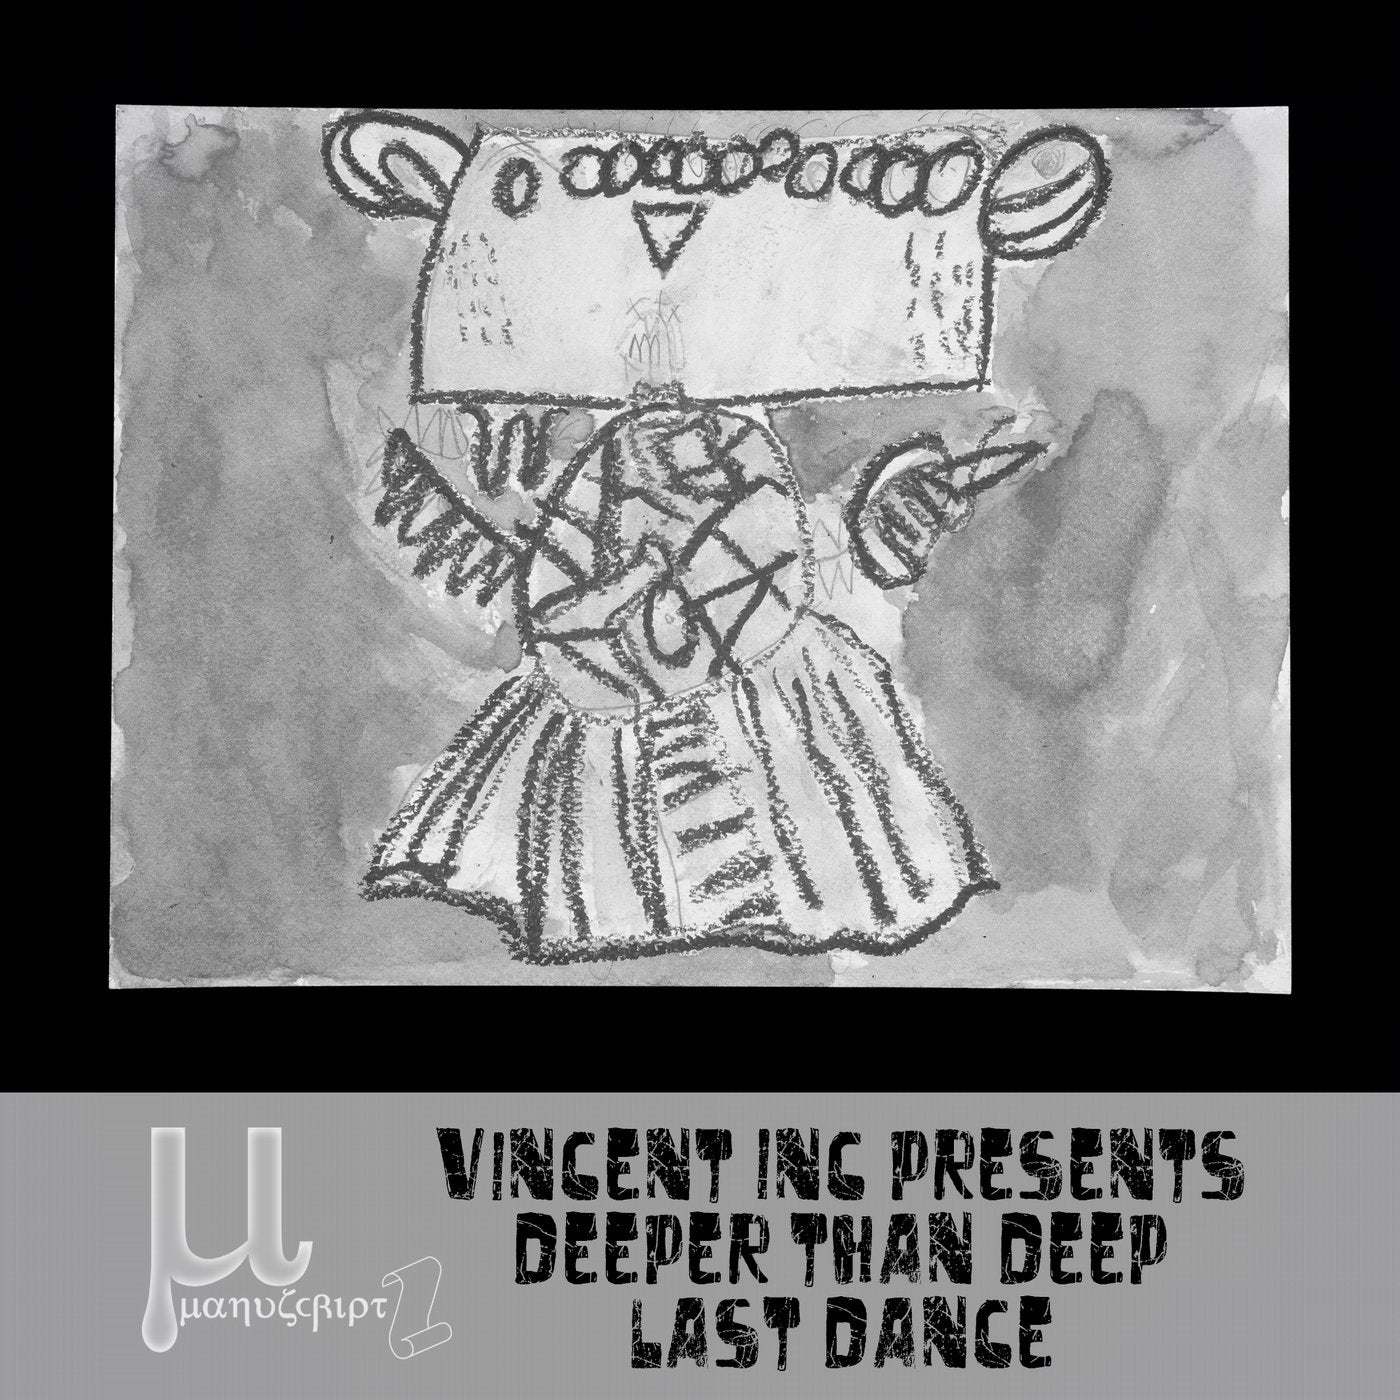 Deeper Than DEEP (Last Dance)